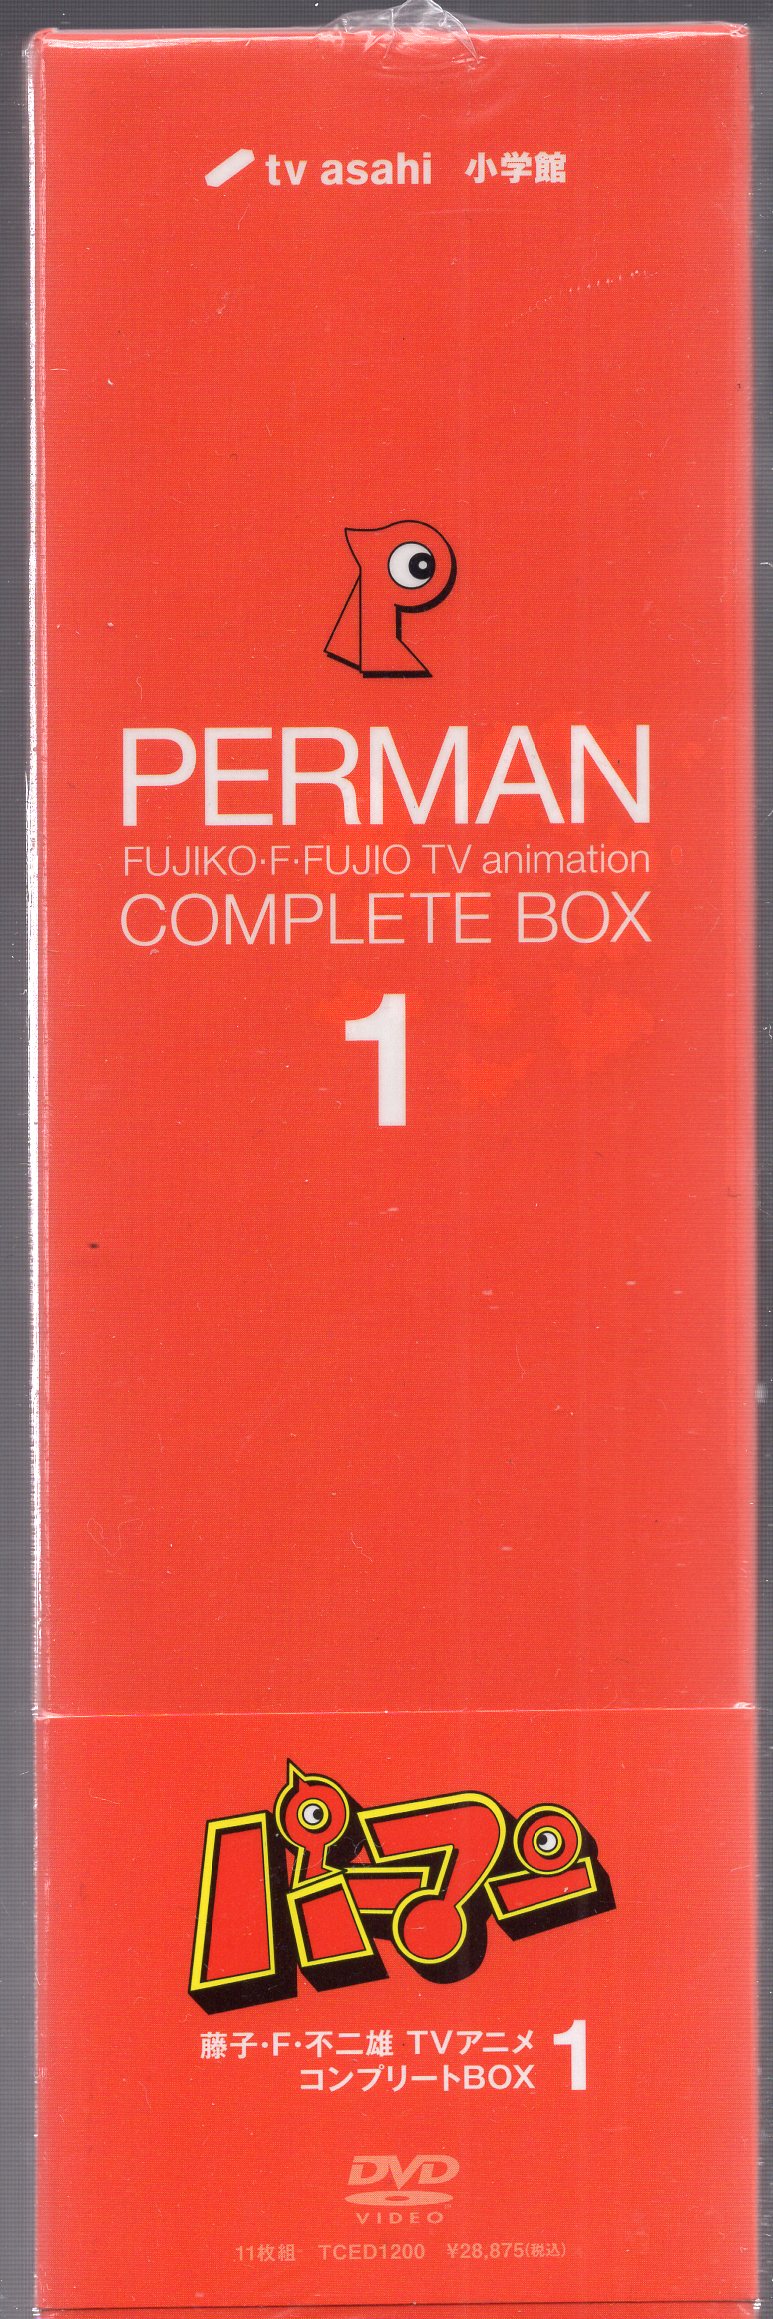 DVD】パーマンCOMPLETE BOX 1 [DVD] 11枚組 TVアニメ 藤子・F・不二雄 ...